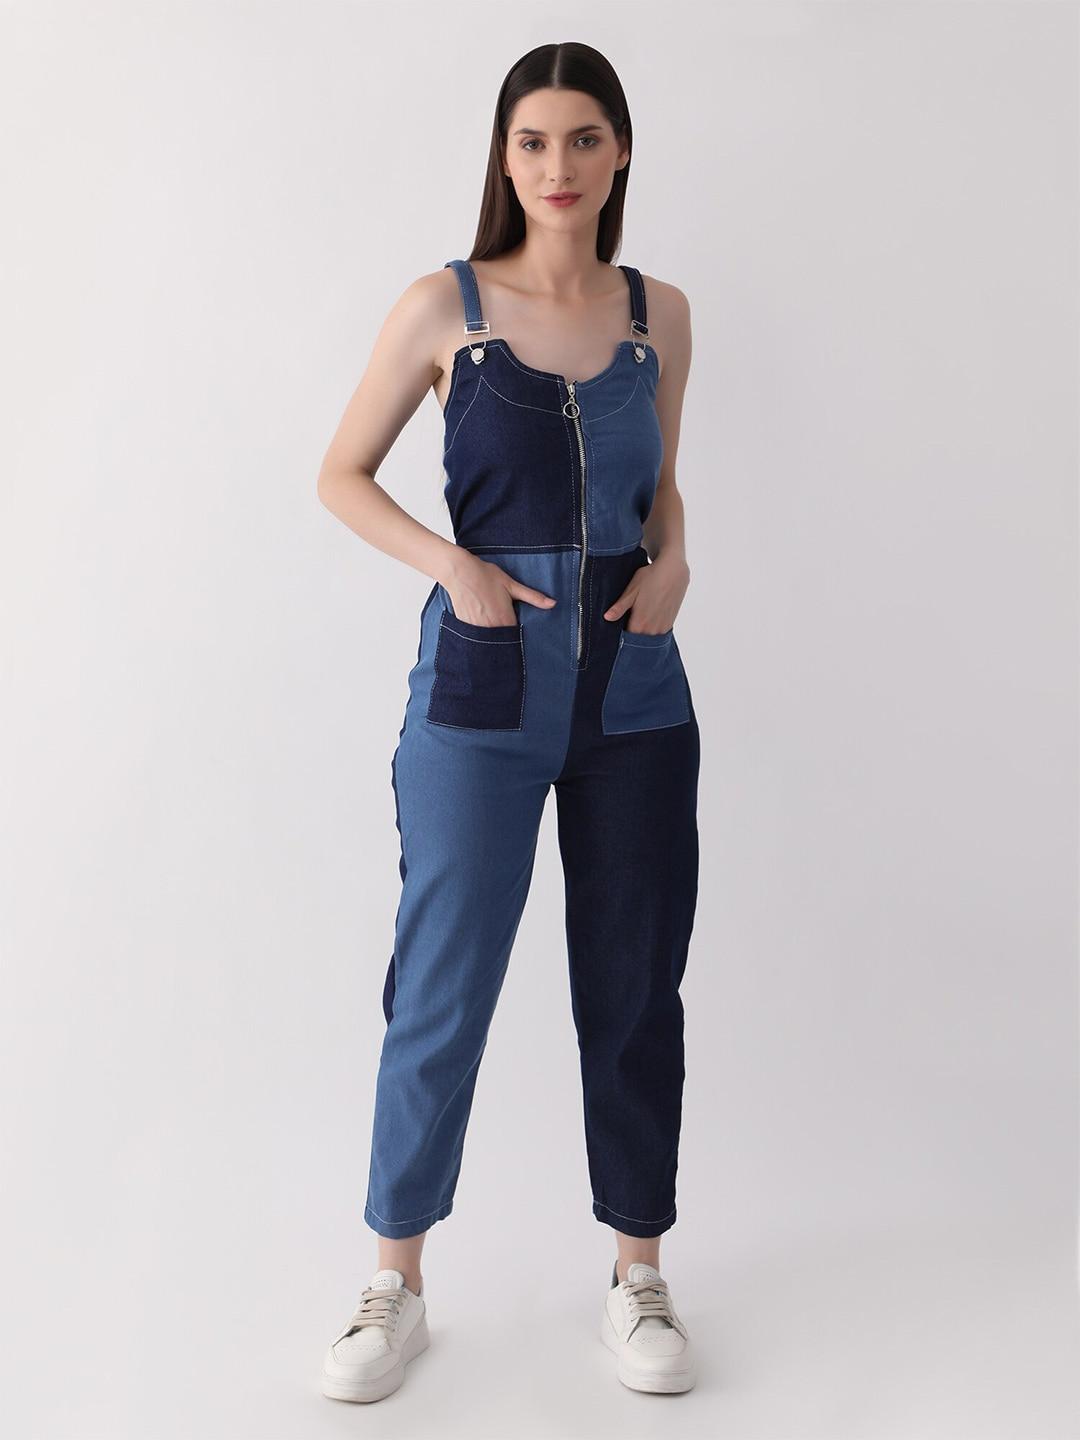 dkgf fashion shoulder straps colourblocked playsuit